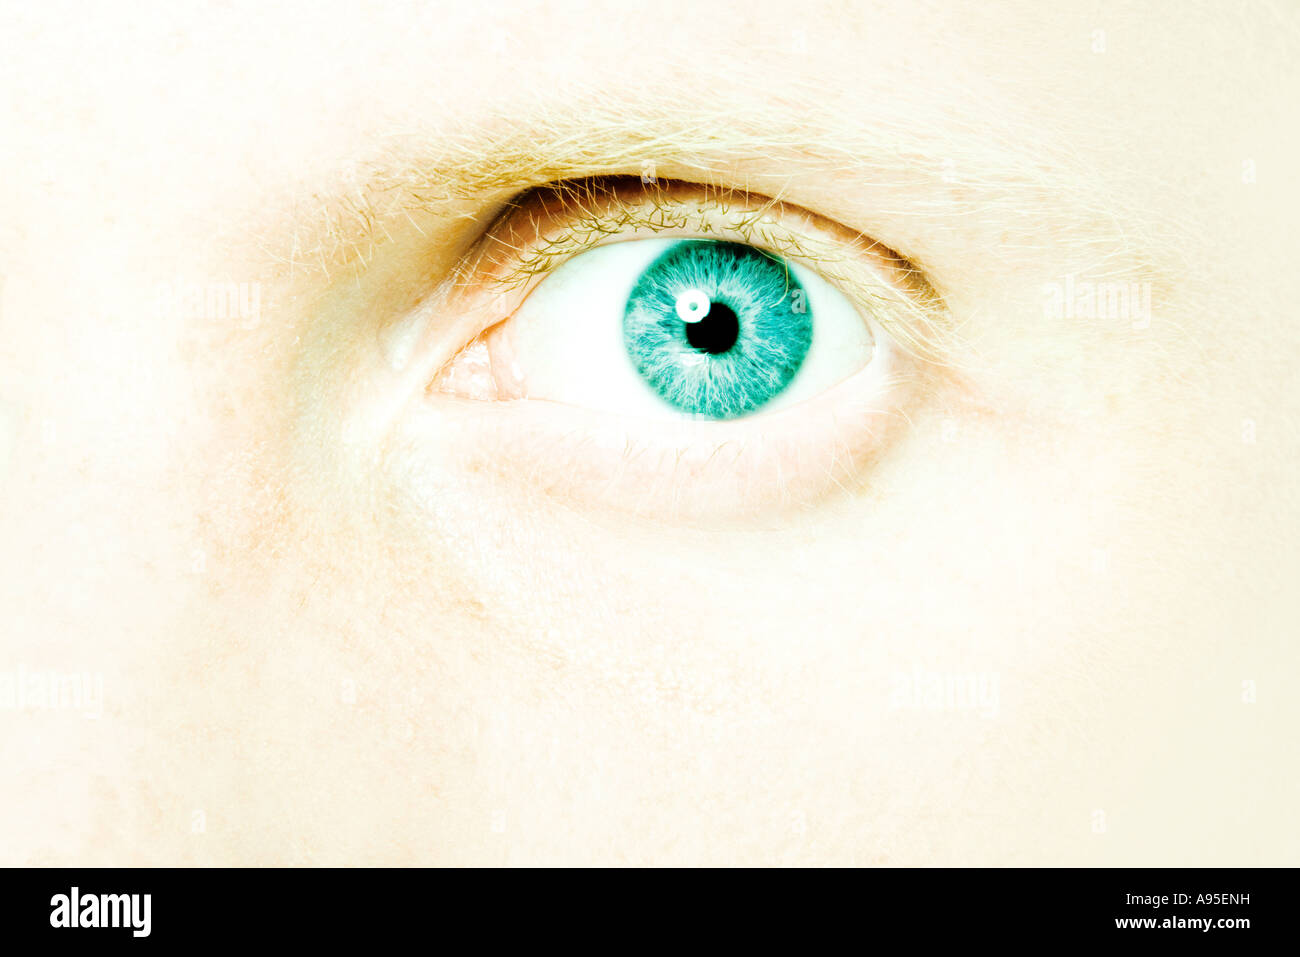 Male eye, extreme close-up Stock Photo